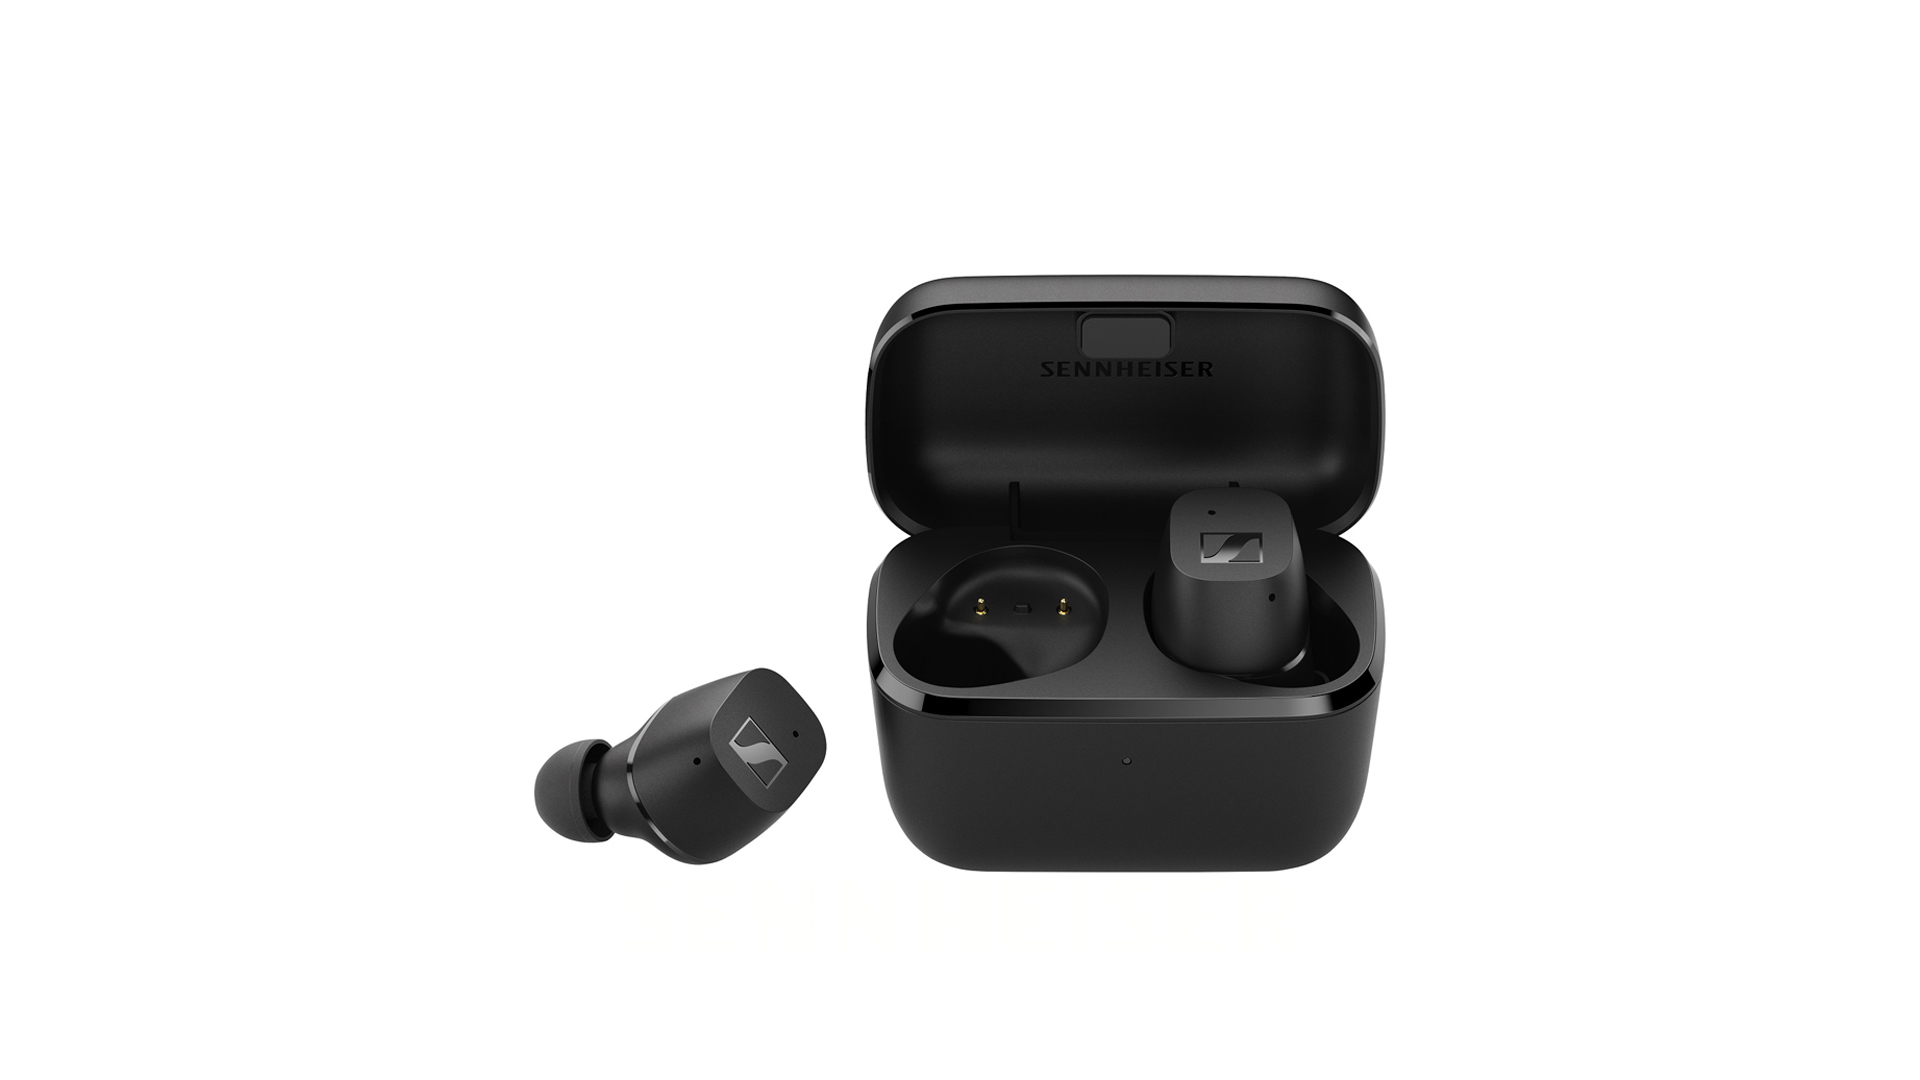 พร้อมขาย! Sennheiser CX True Wireless หูฟัง TWS รุ่นเล็ก ราคา 4,990 บาท